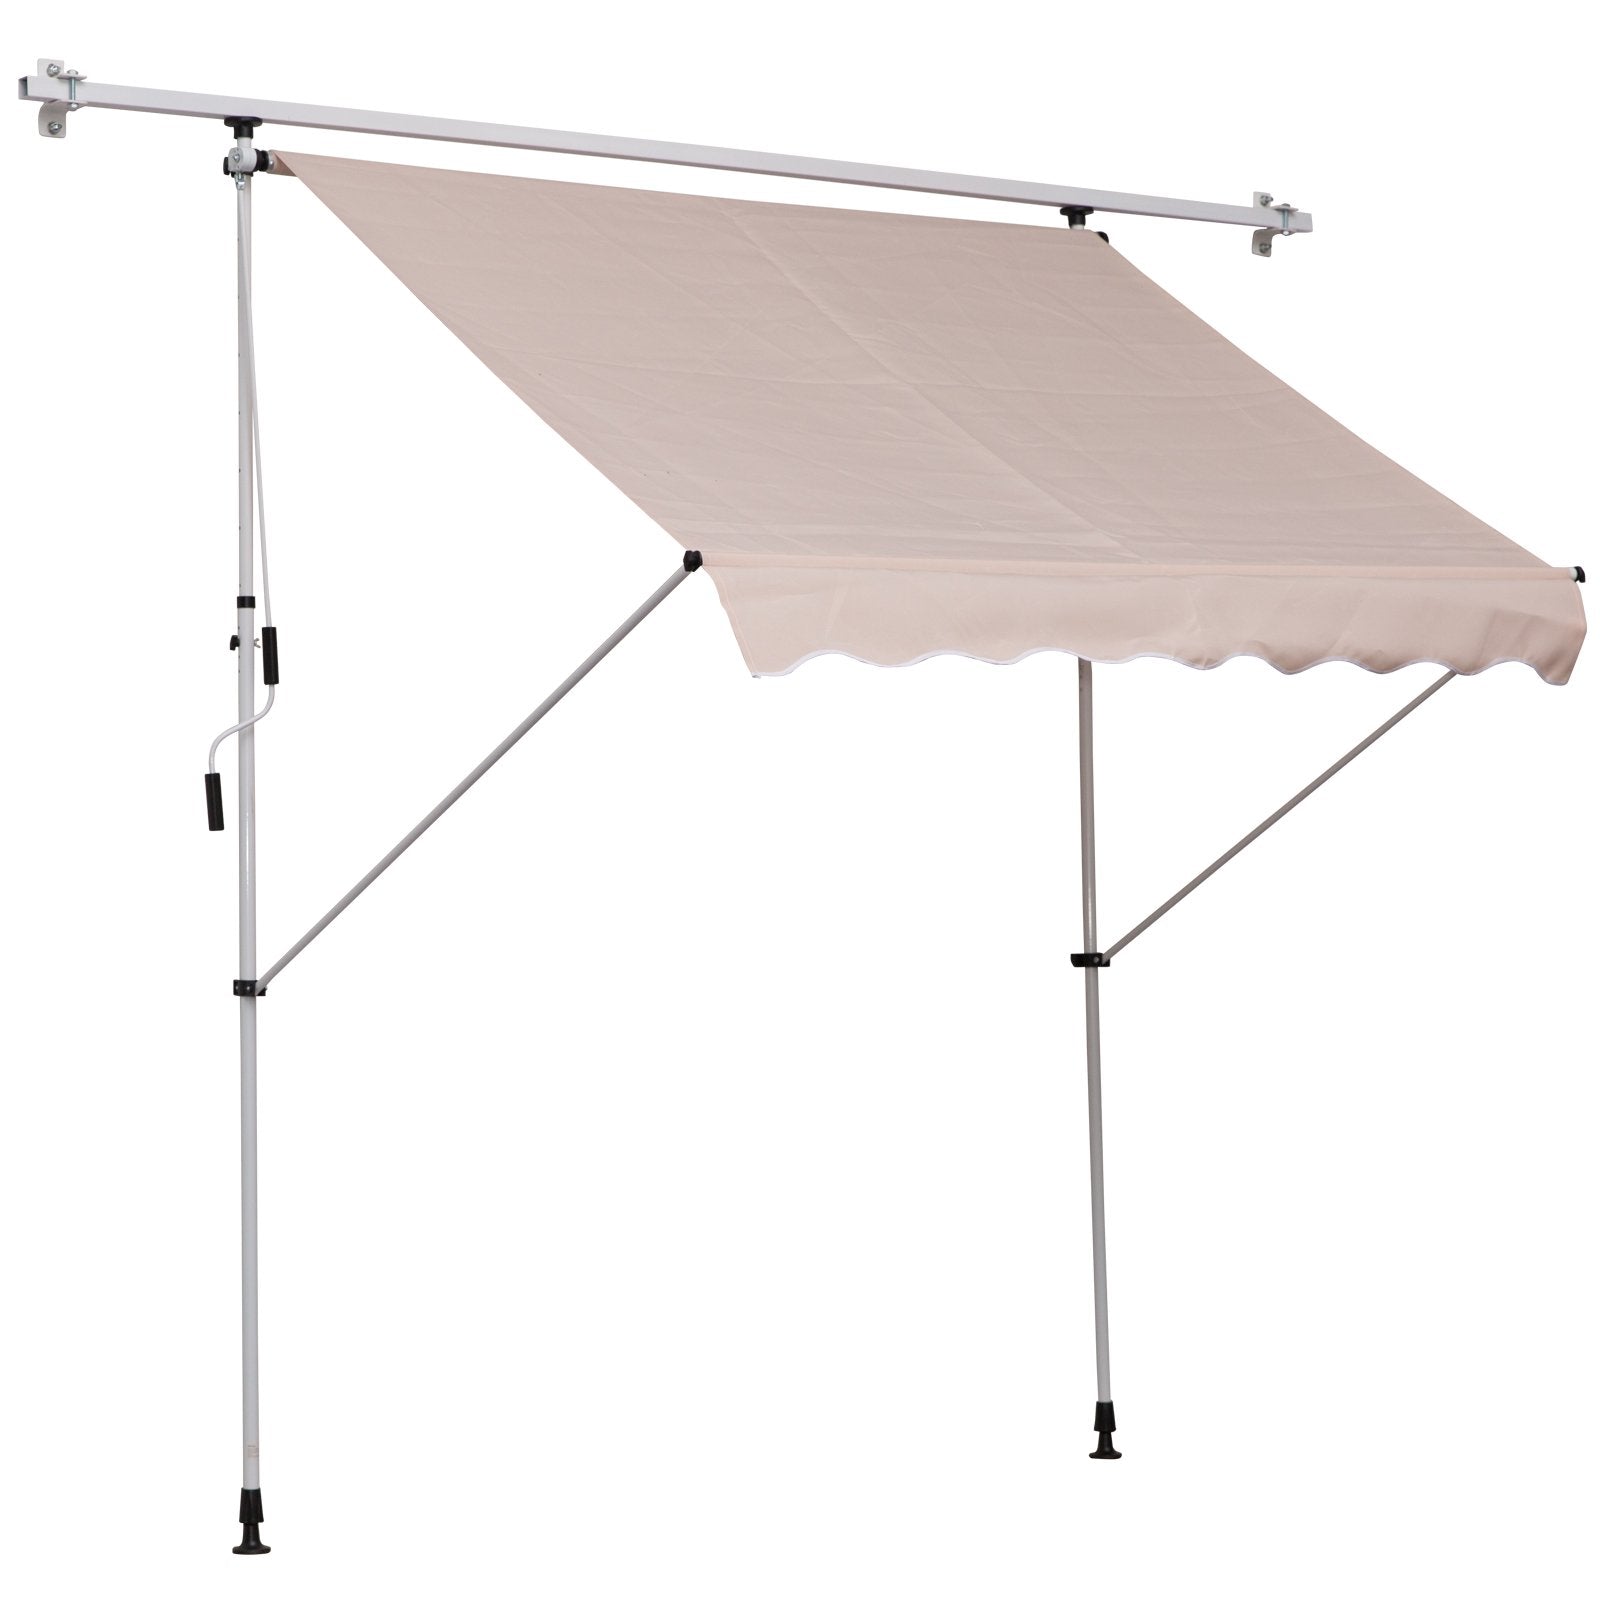 EASYCOMFORT Tenda da Sole 2x1.5 m per Esterno a Rullo con Manovella e  Angolazione Regolabile, Beige